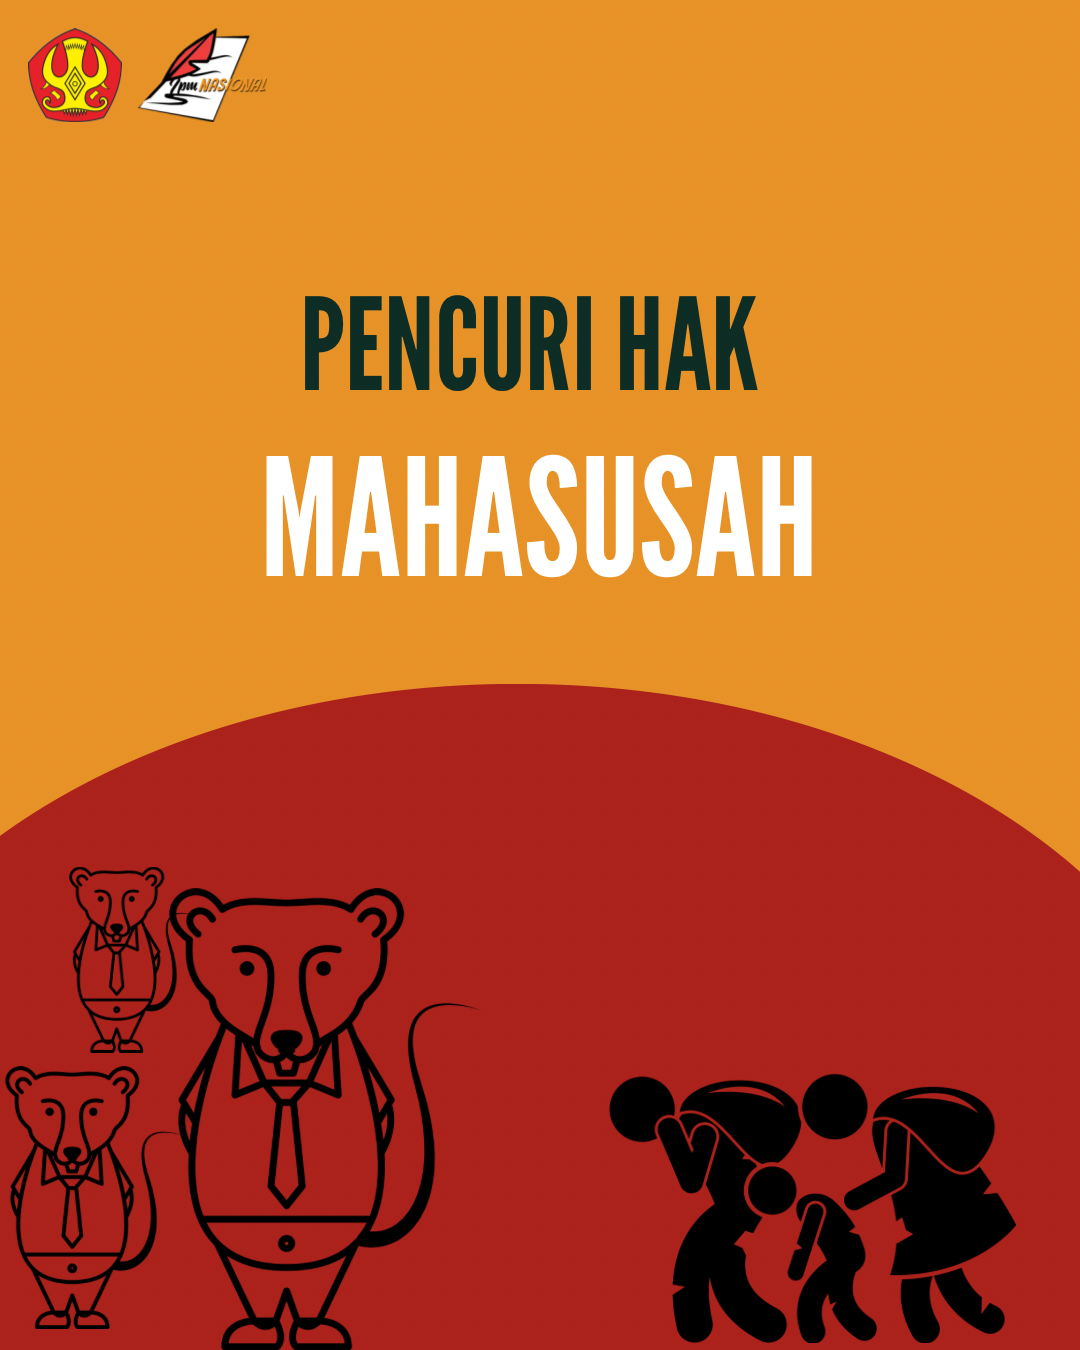 PENCURI HAK MAHASUSAH